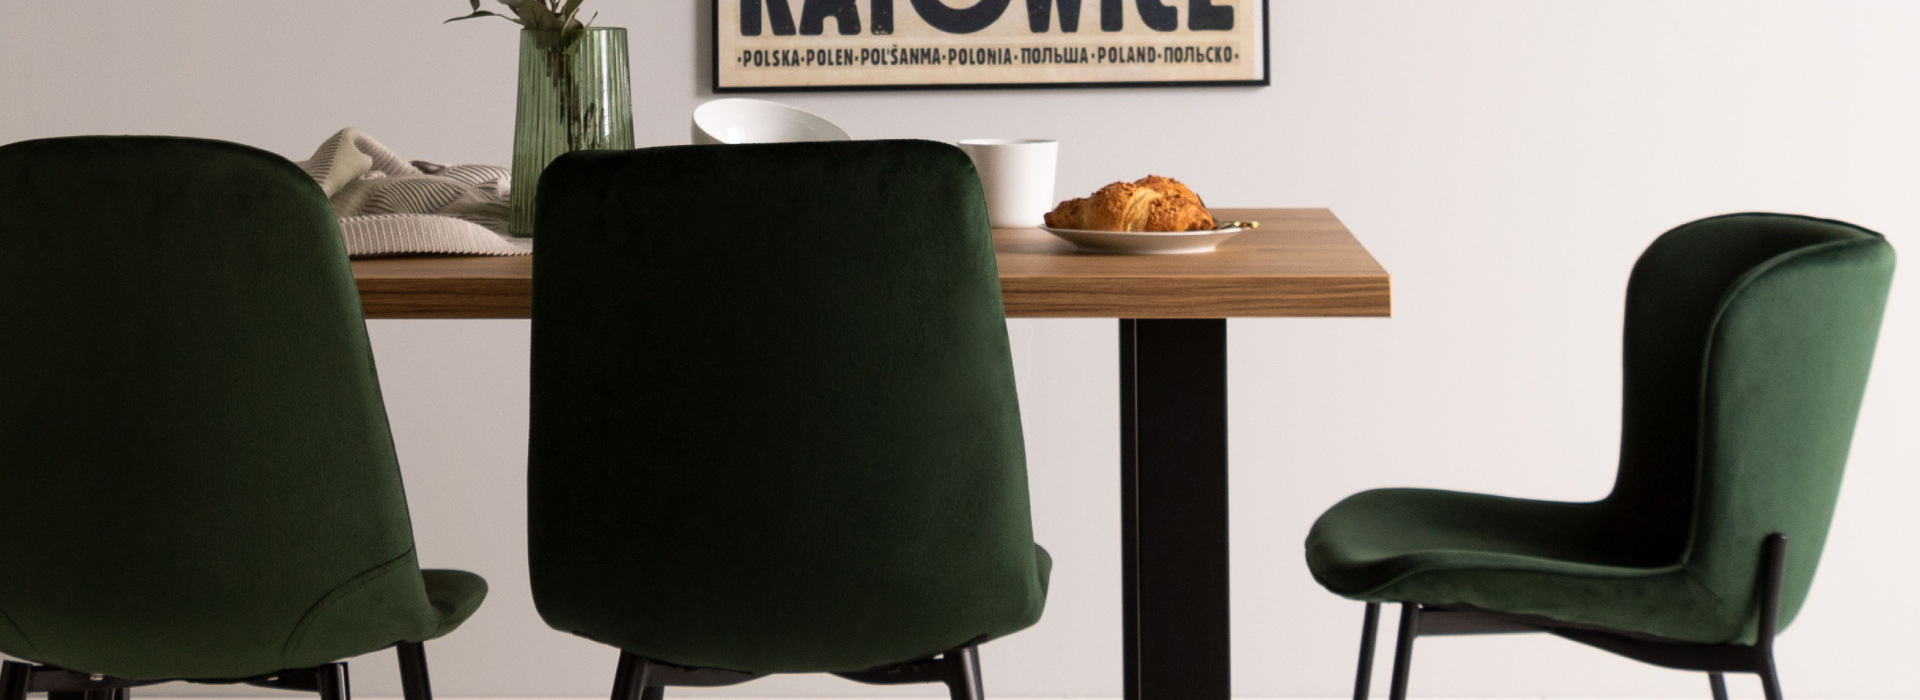 Butelkowo-zielone krzesła ustawione wokół drewnianego stołu, na którym stoi zastawa. W tle, na ścianie, zawieszony plakat z napisem „Katowice”.